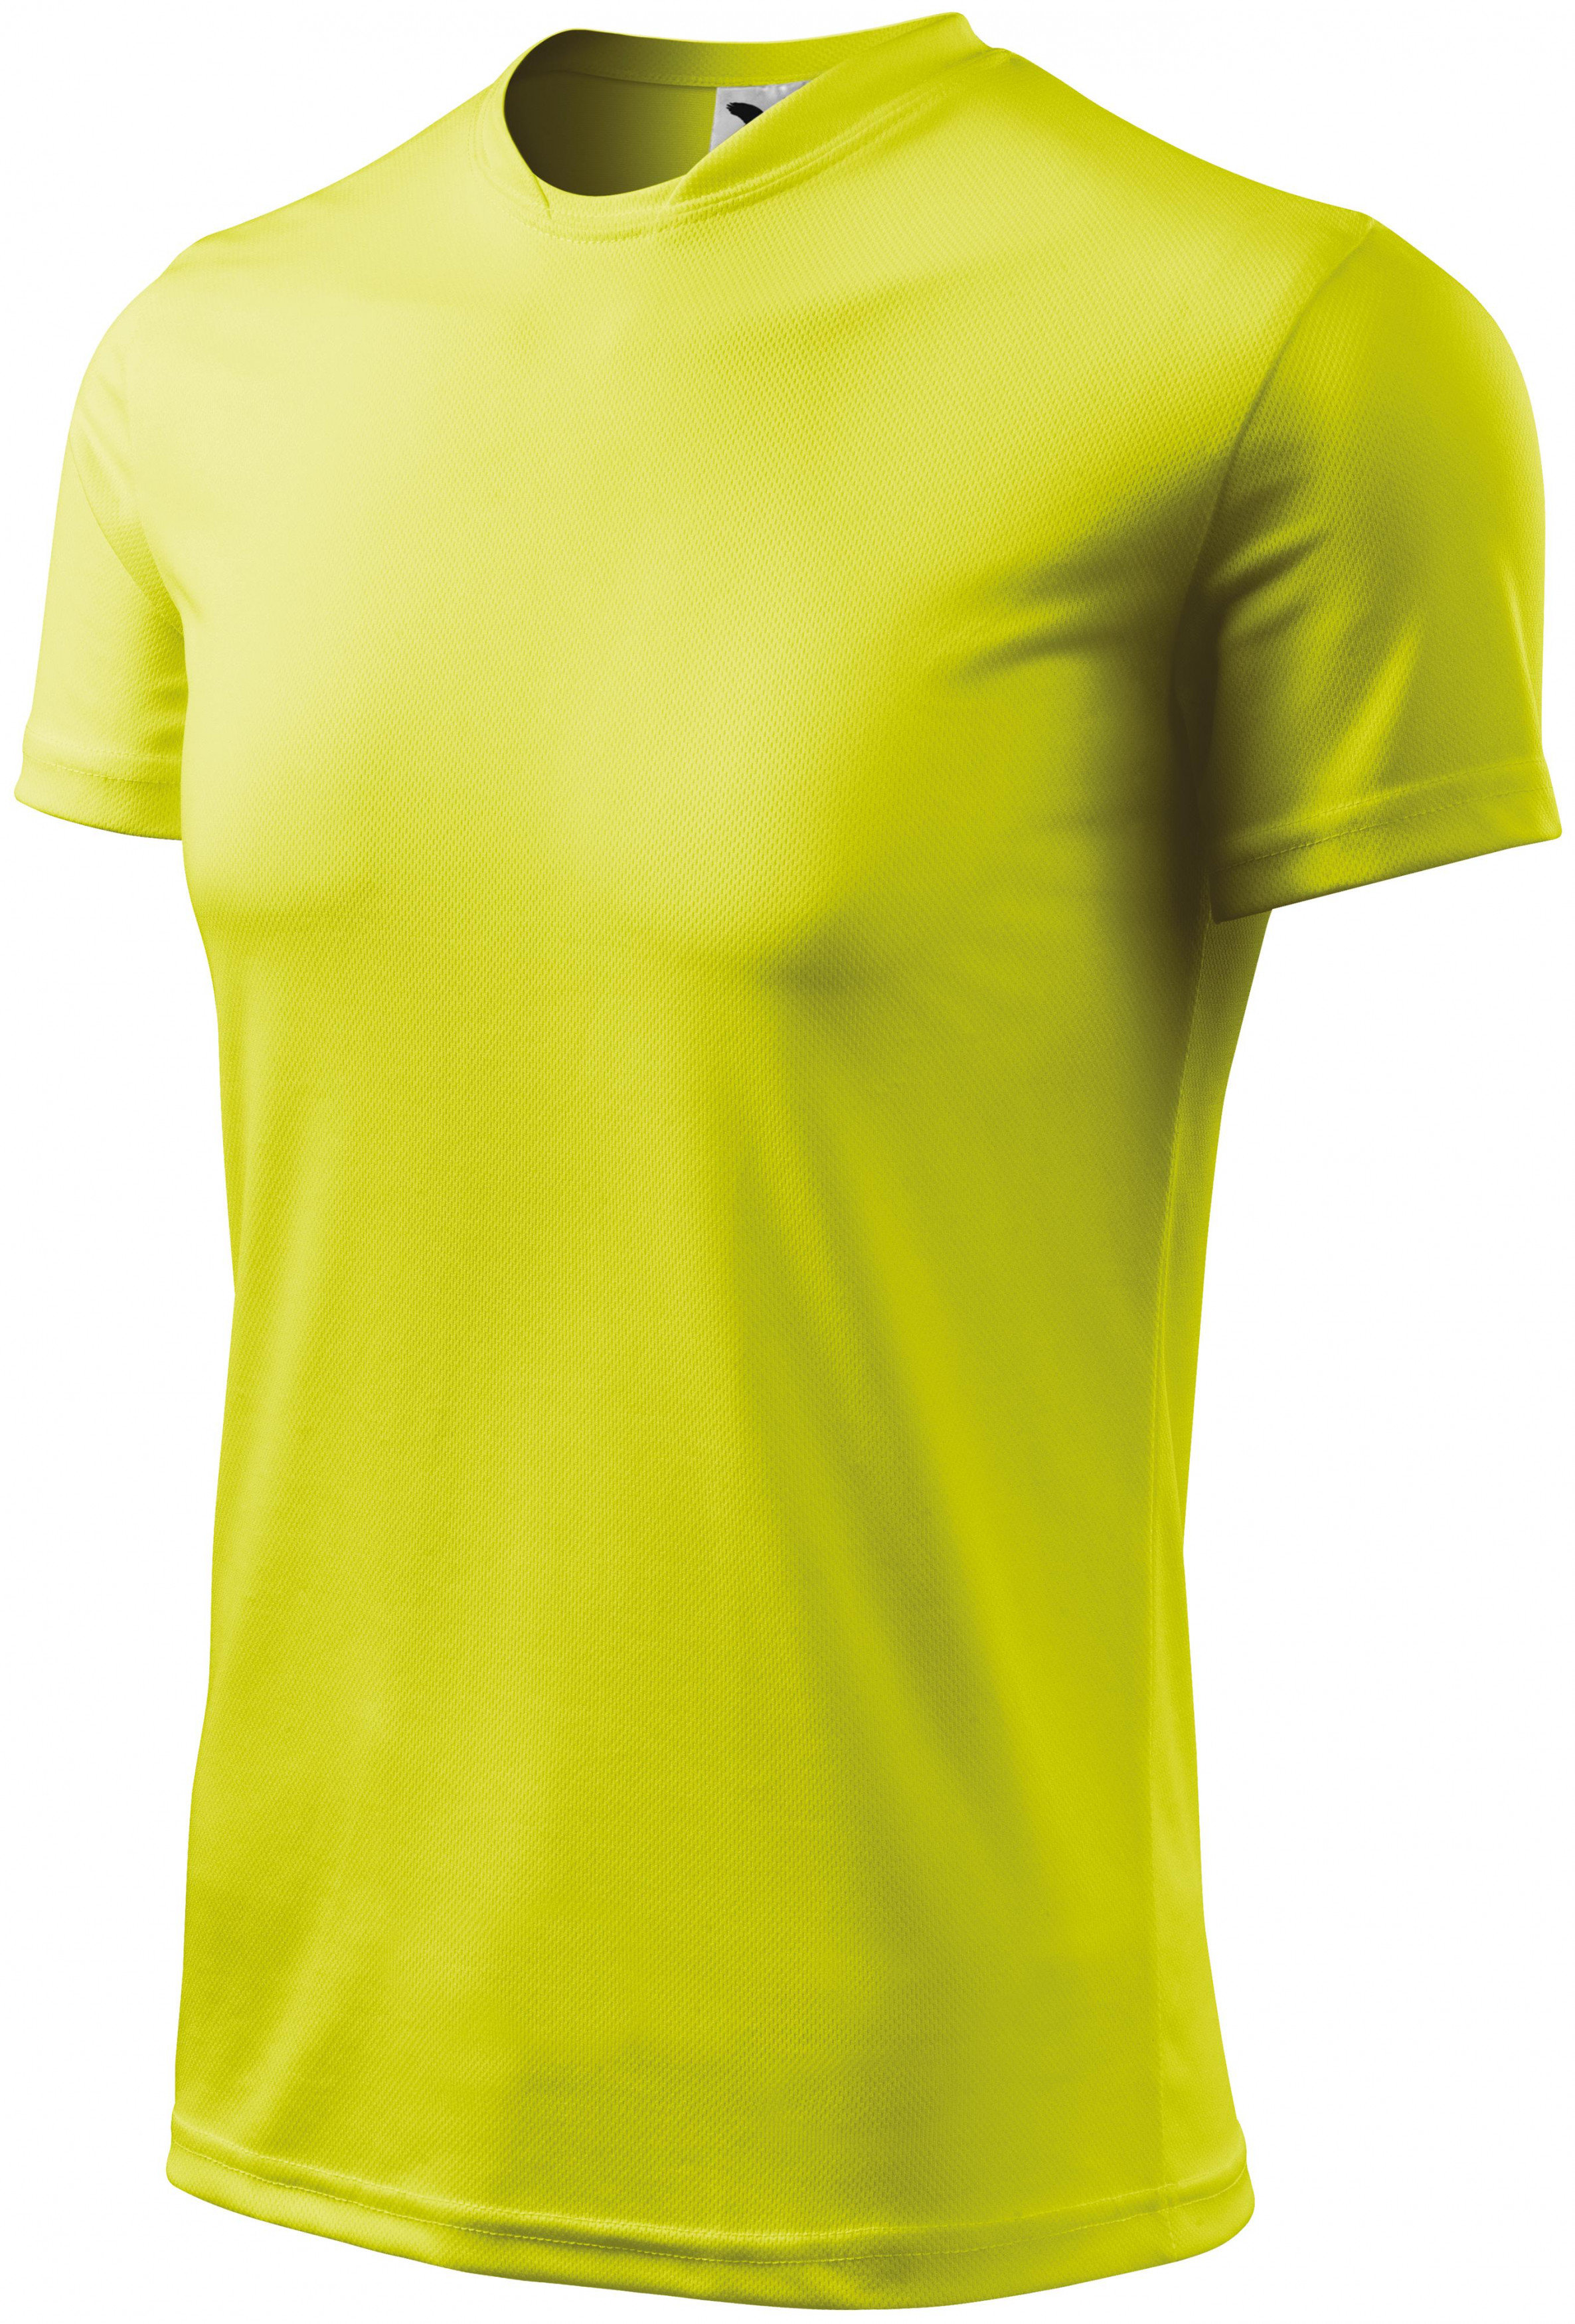 Športové tričko detské, neónová žltá, 146cm / 10rokov